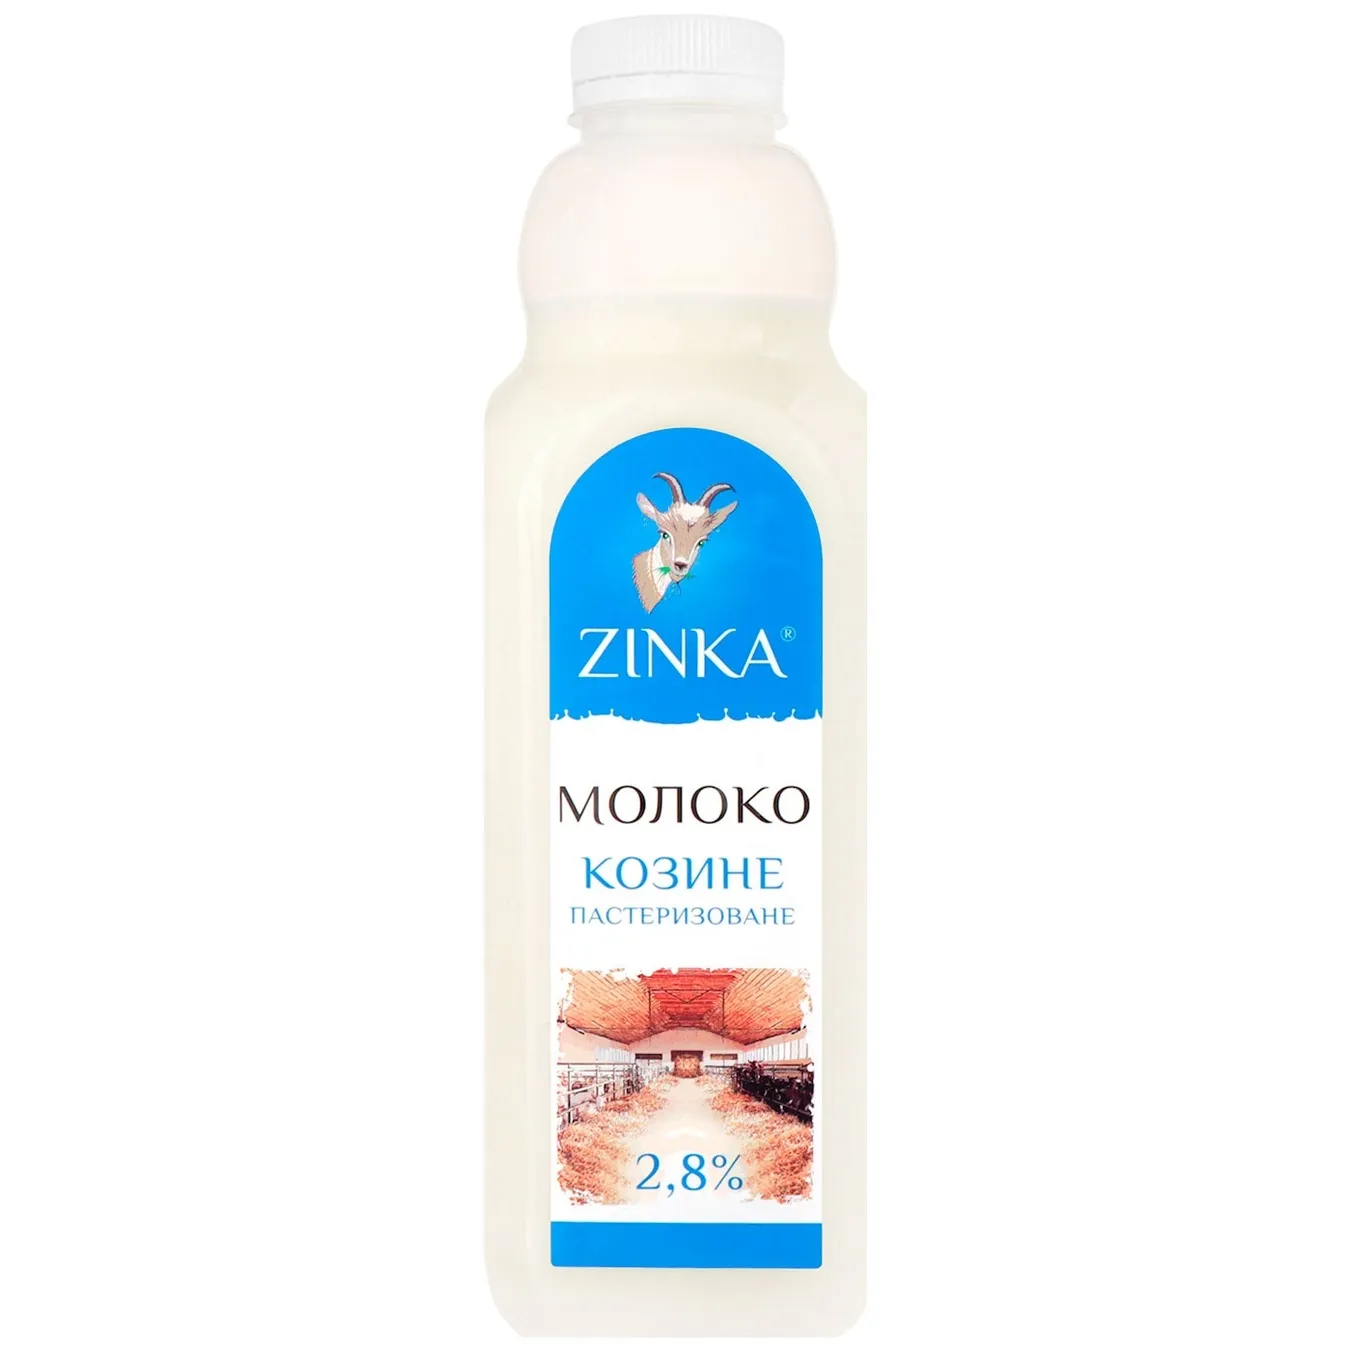 Zinka Pasteurized Goat Milk